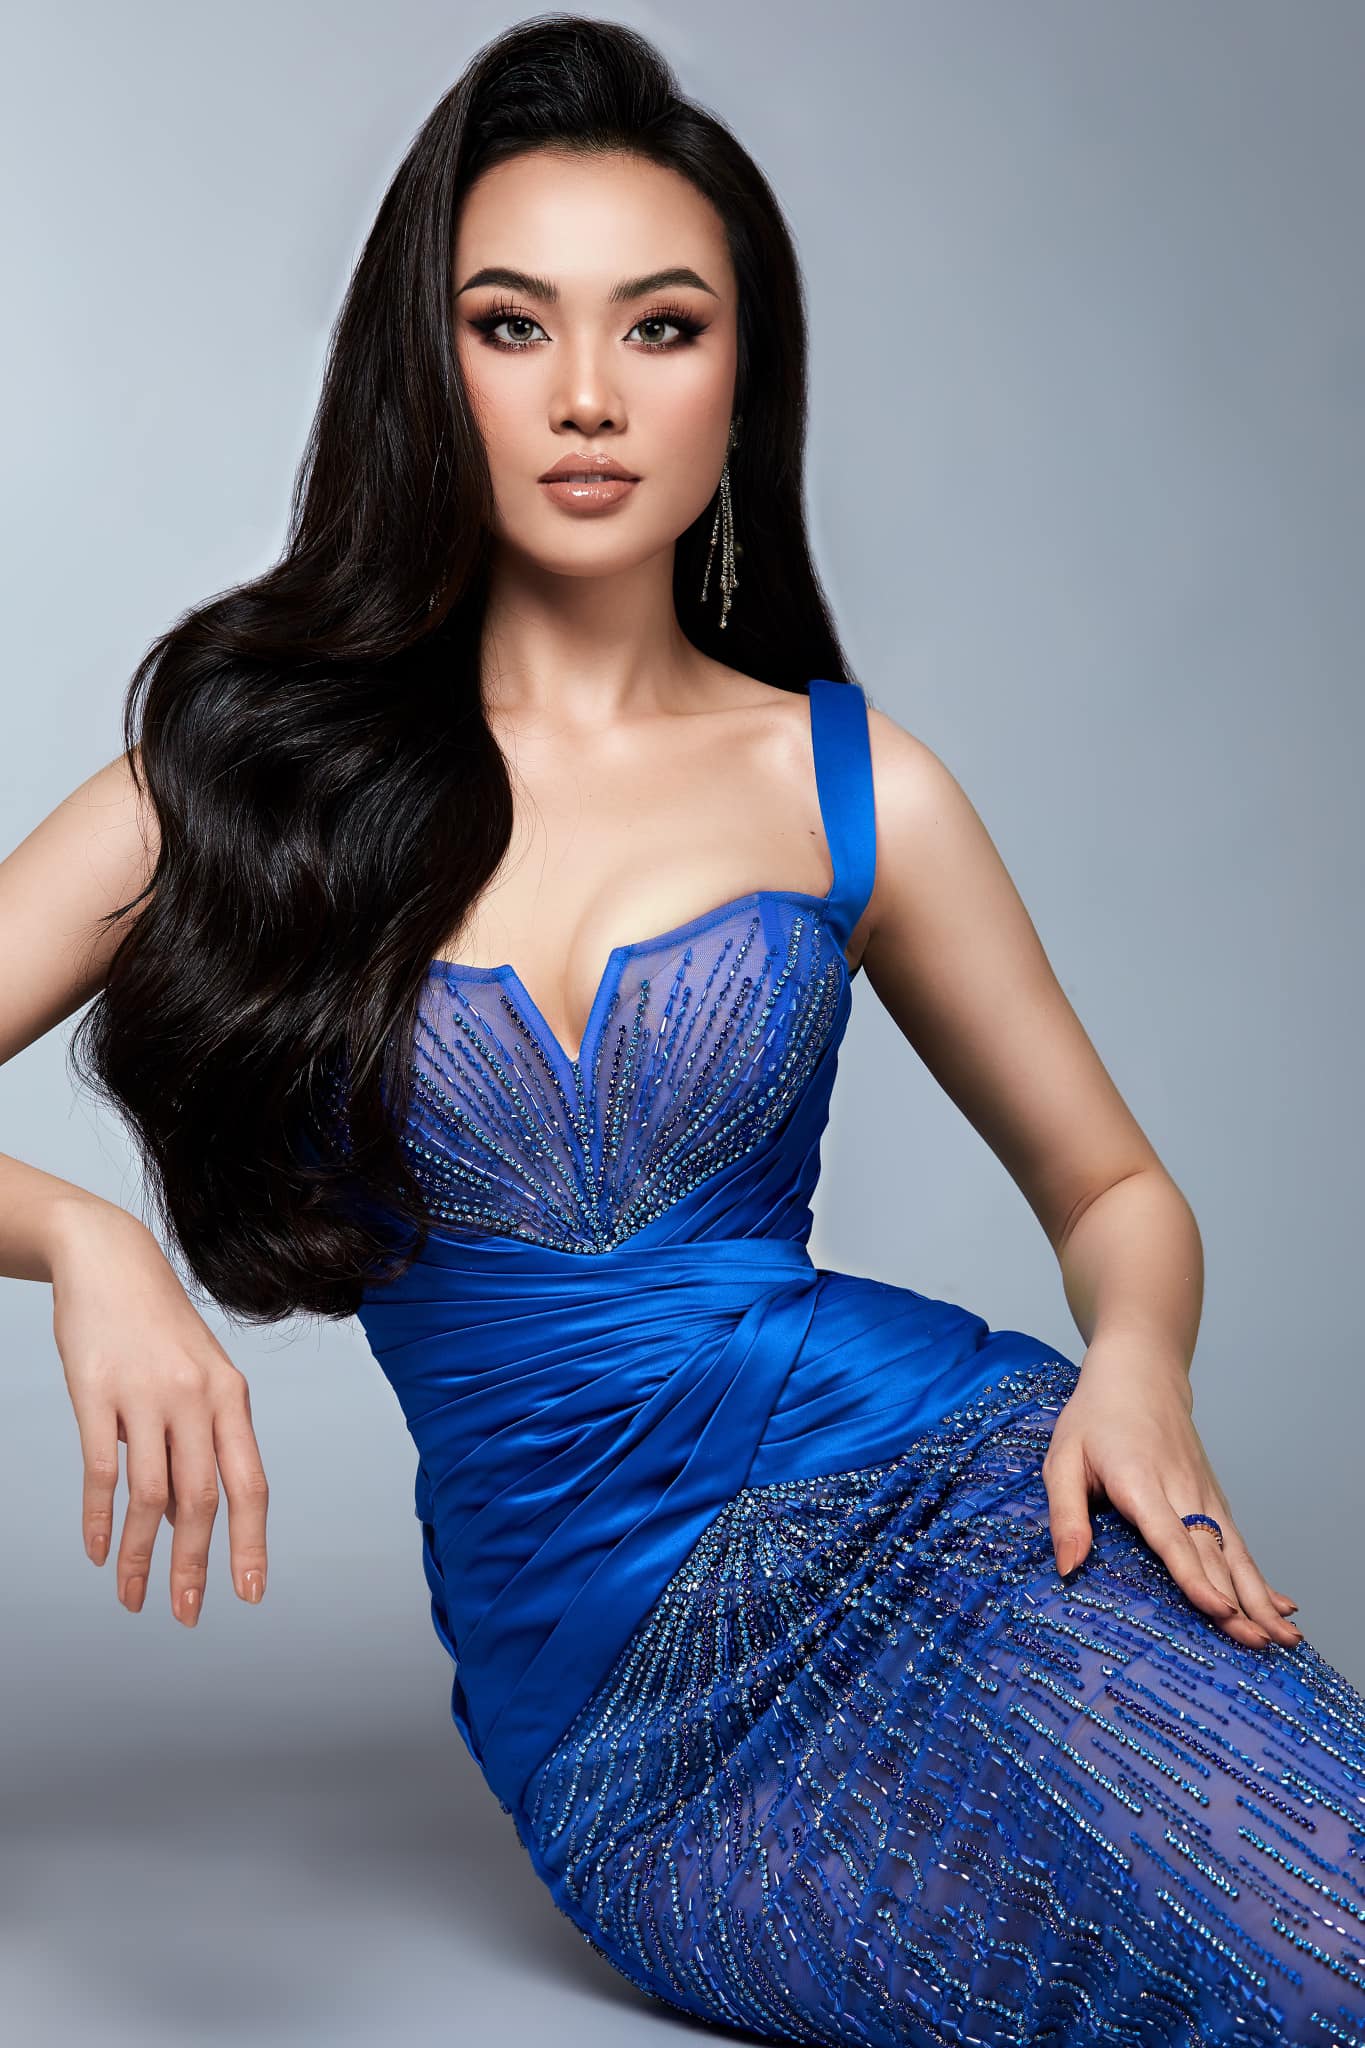 Hoa khôi Ngoại thương Huỳnh Phạm Thủy Tiên từng nặng 90kg 'lột xác' tại Hoa hậu Hoàn vũ 2022 - Ảnh 8